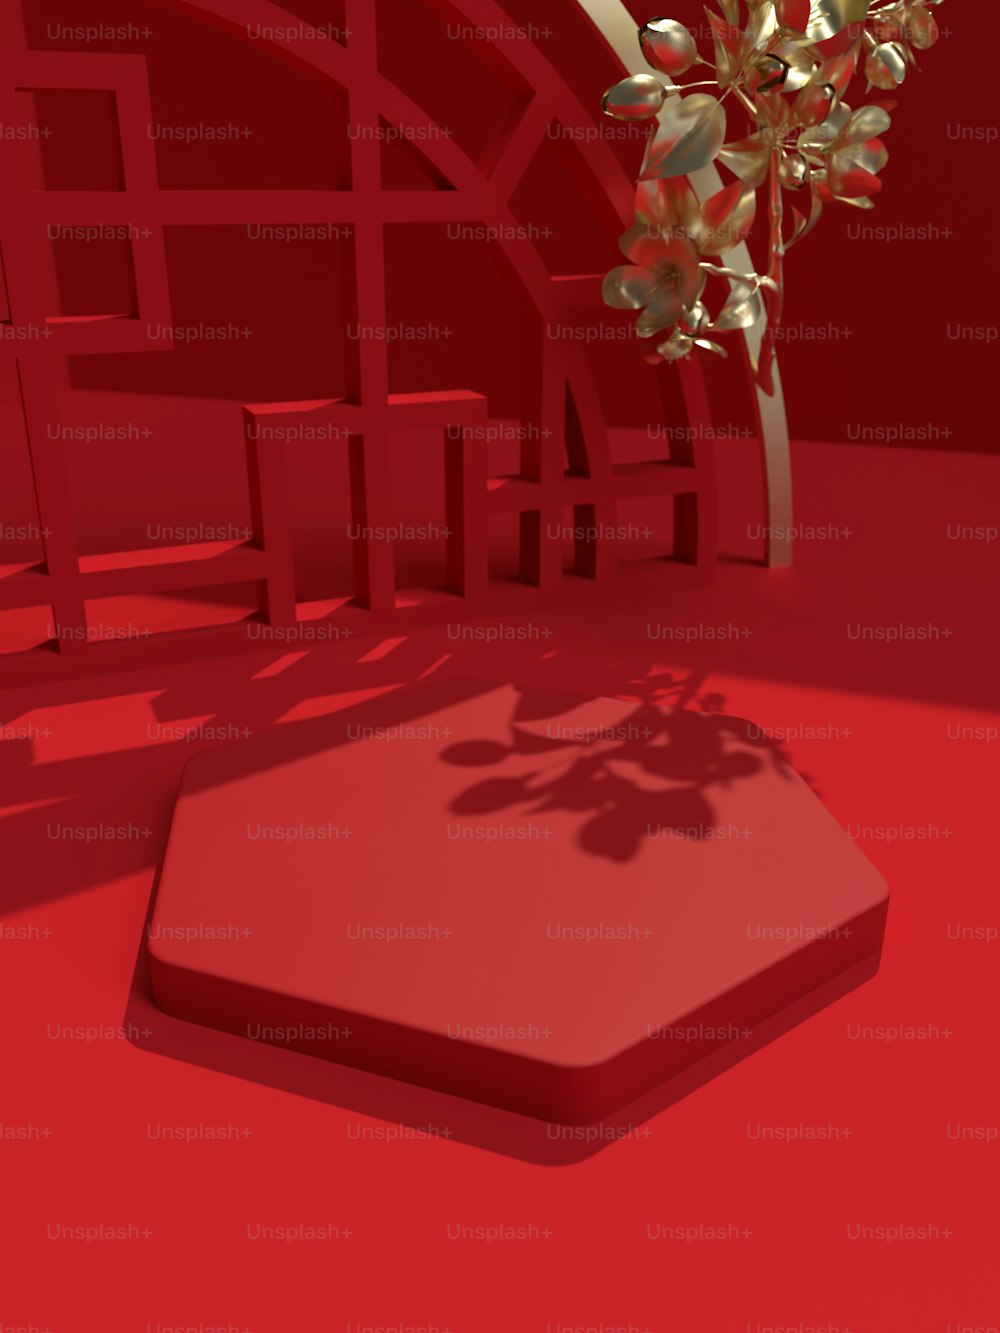 Une image 3D d’un arbre dans une pièce rouge